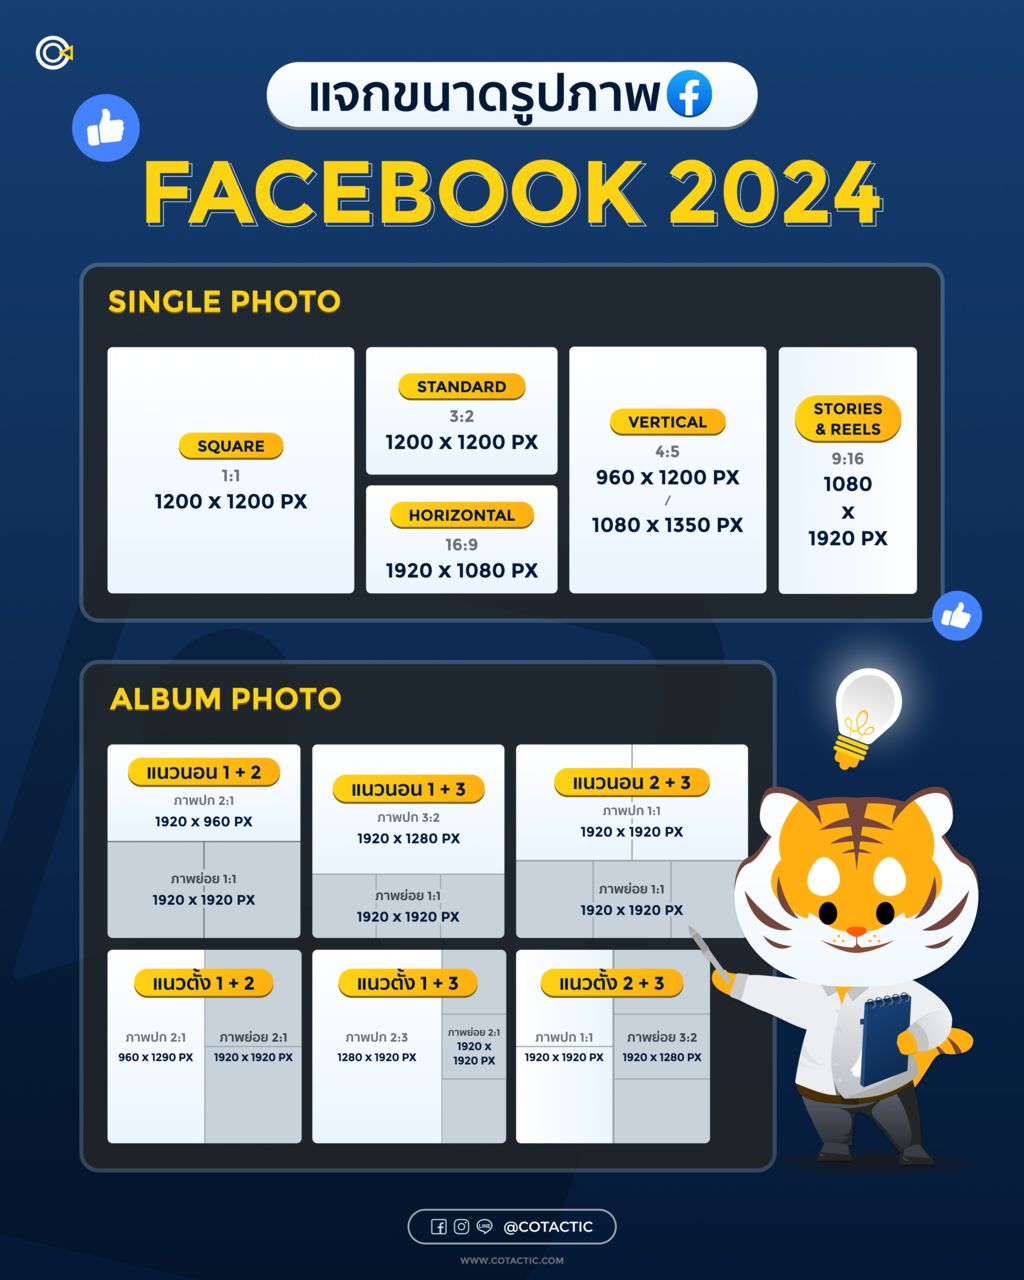 ขนาดรูป Facebook ฉบับปี 2024 แต่ละสัดส่วน มีขนาดเท่าไหร่บ้าง